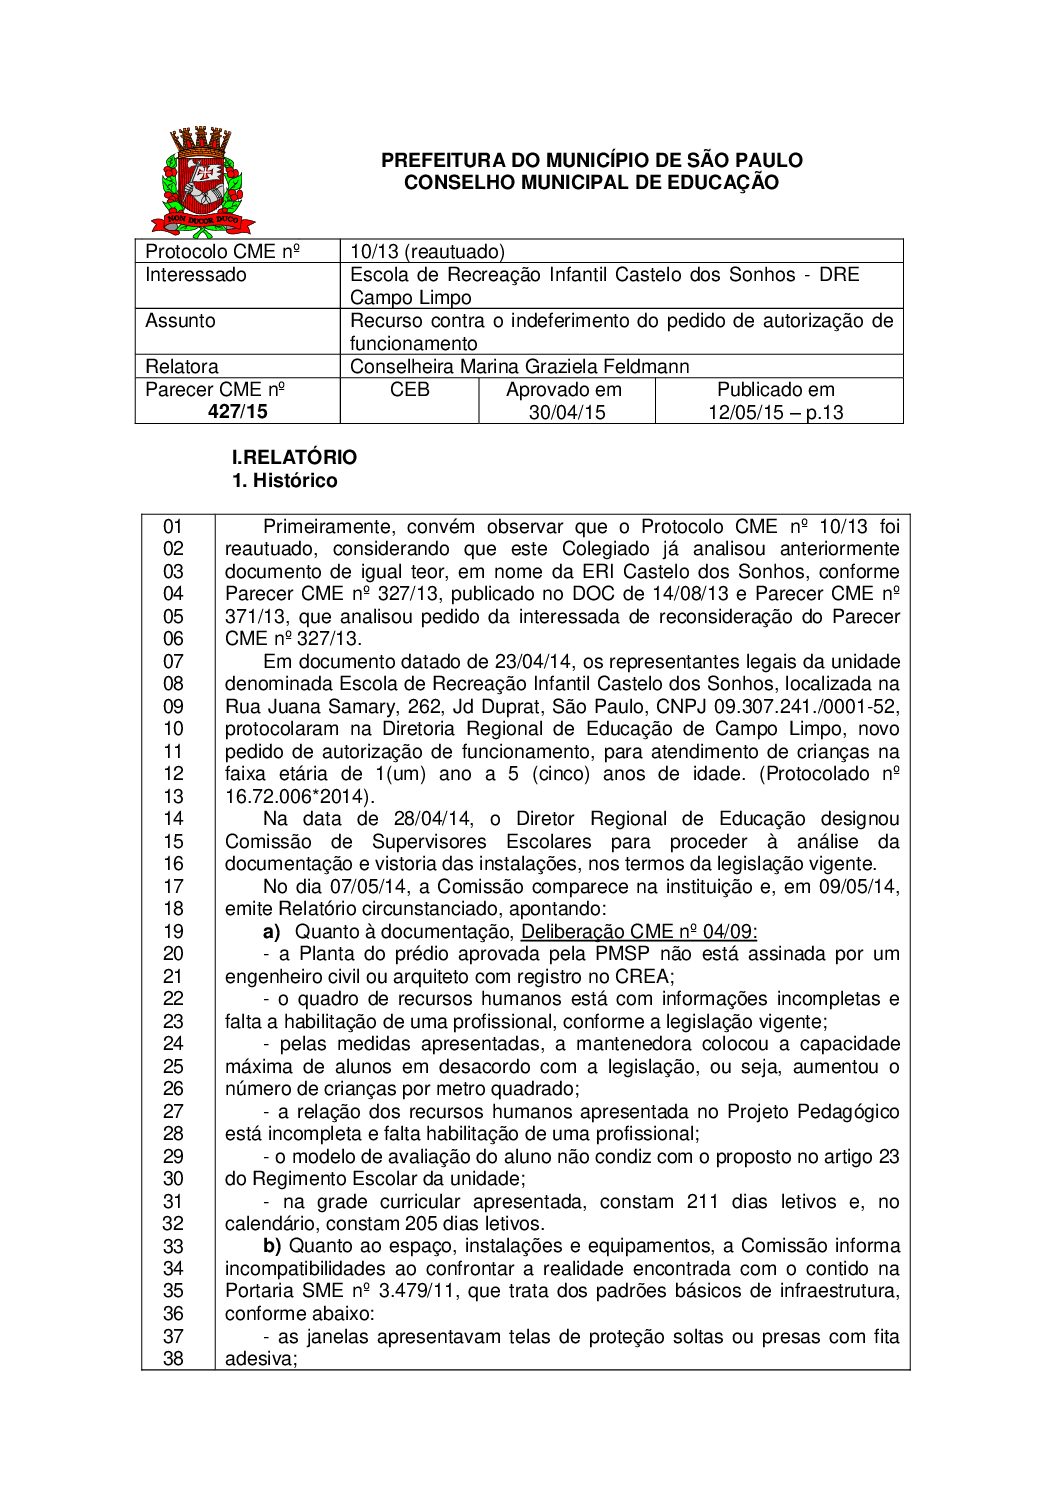 Parecer CME nº 427/2015 - Escola de Recreação Infantil Castelo dos Sonhos (DRE Campo Limpo) - Recurso contra o indeferimento do pedido de autorização de funcionamento 